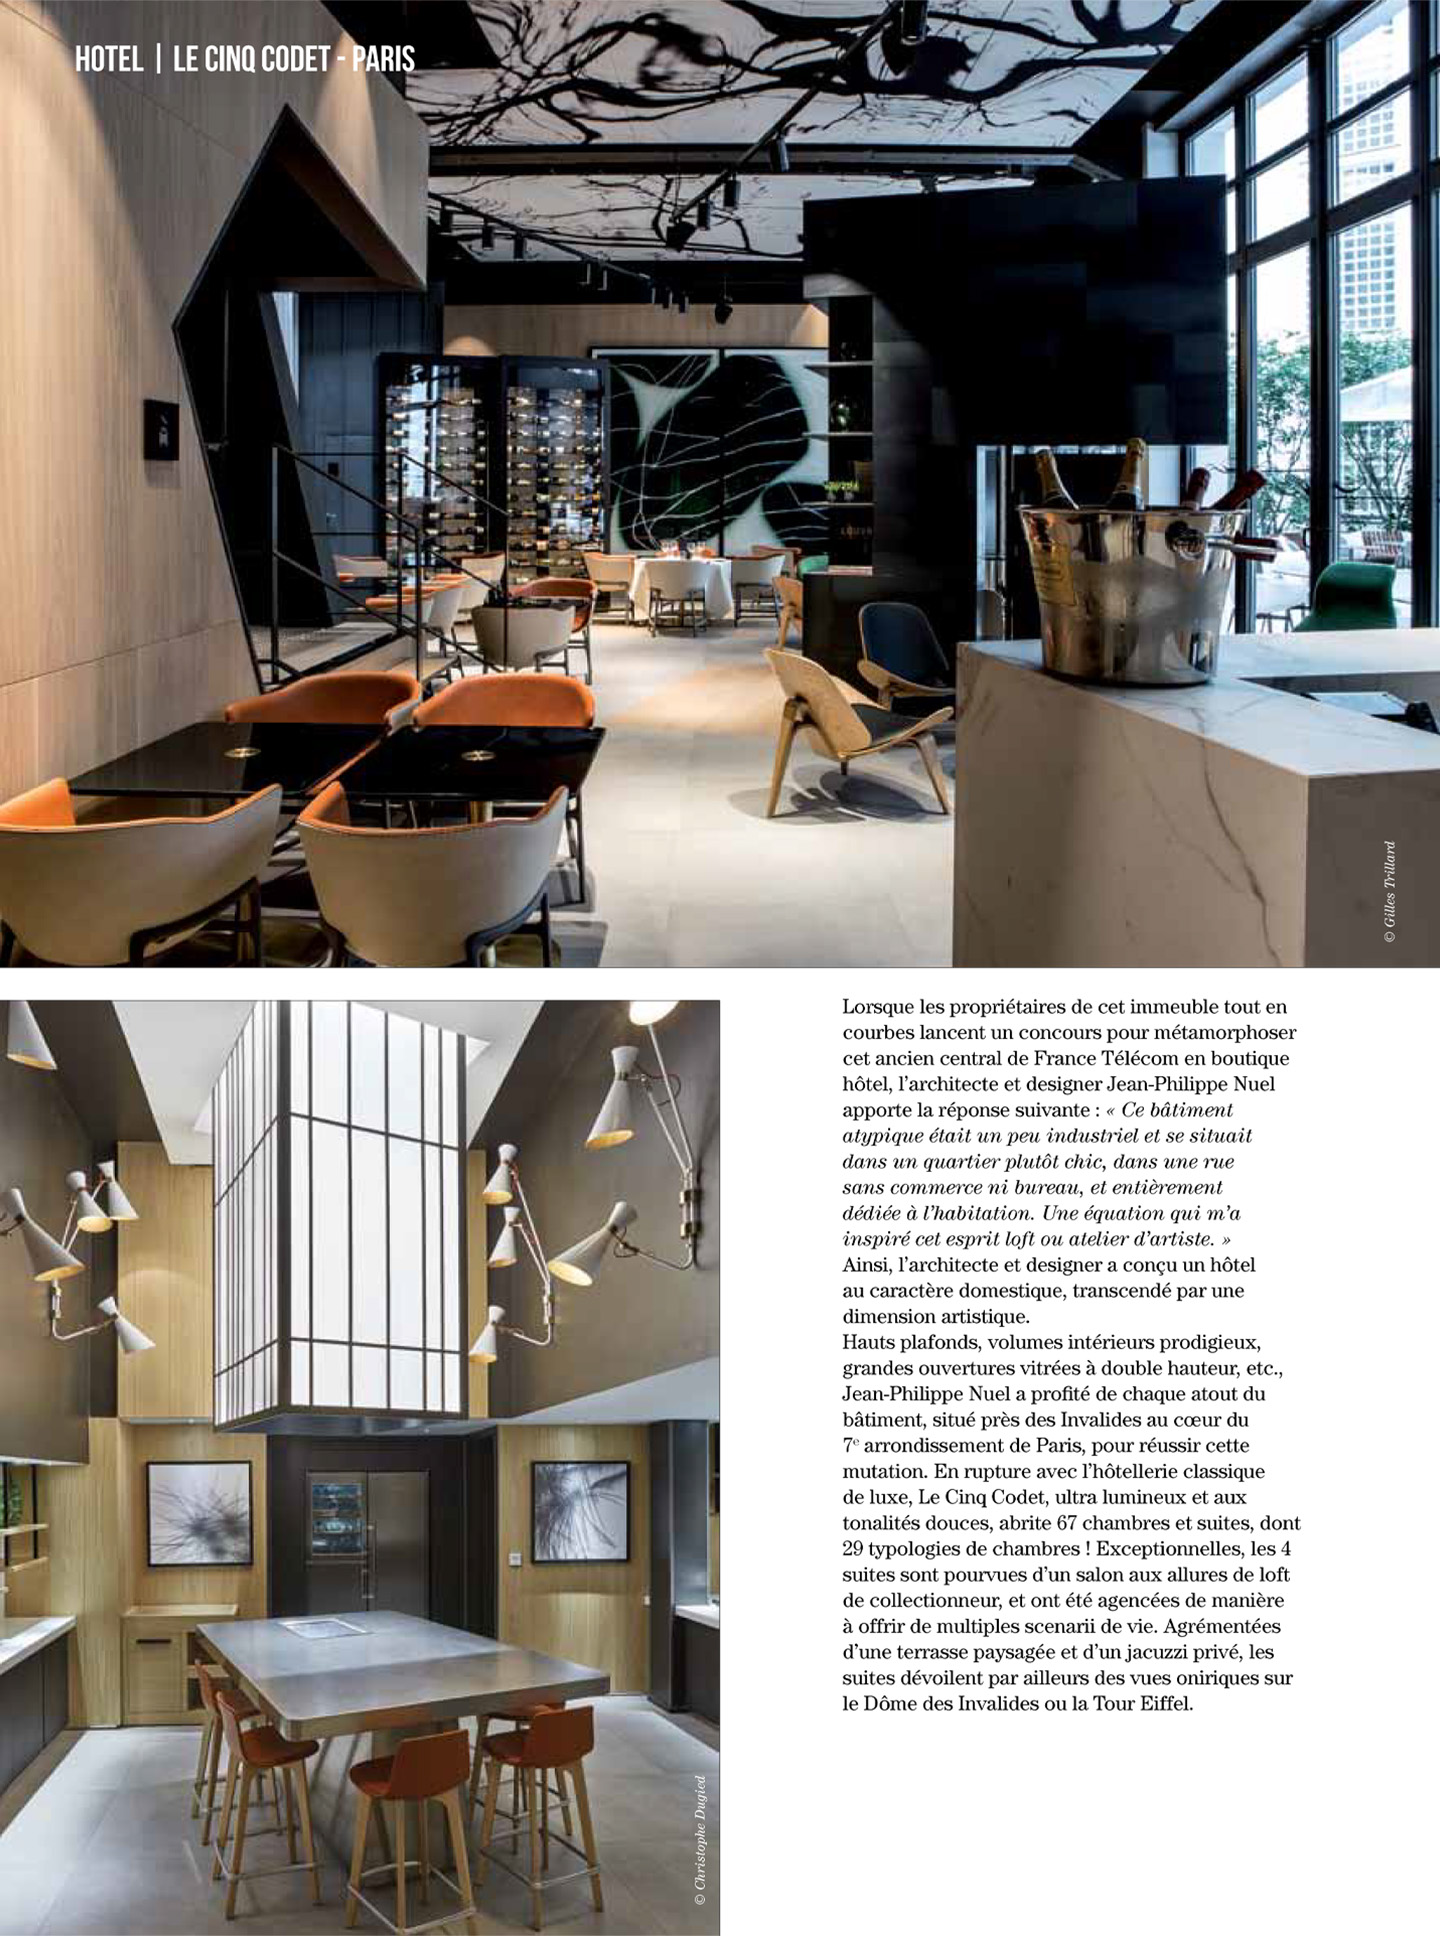 article sur le cinq codet dans le magazine artravel, hotel de luxe 5 étoiles réalisé par le studio d'architecture d'intérieur jean-philippe nuel